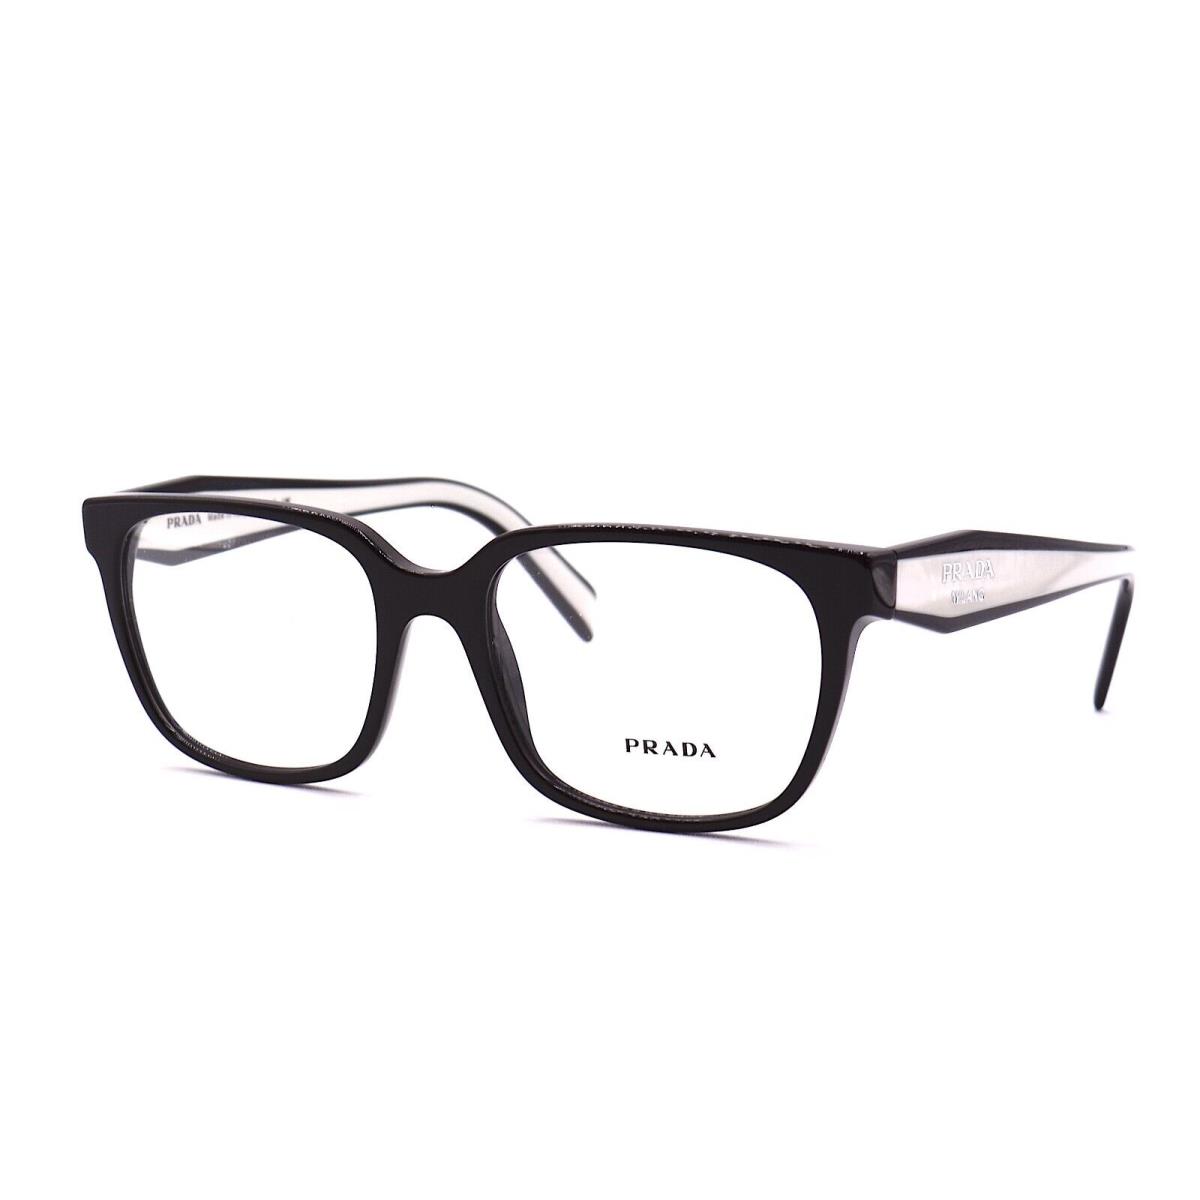 Prada PR 17zV 1AB1O1 Black Demo Lens Eyeglasses Frame 54-18-140